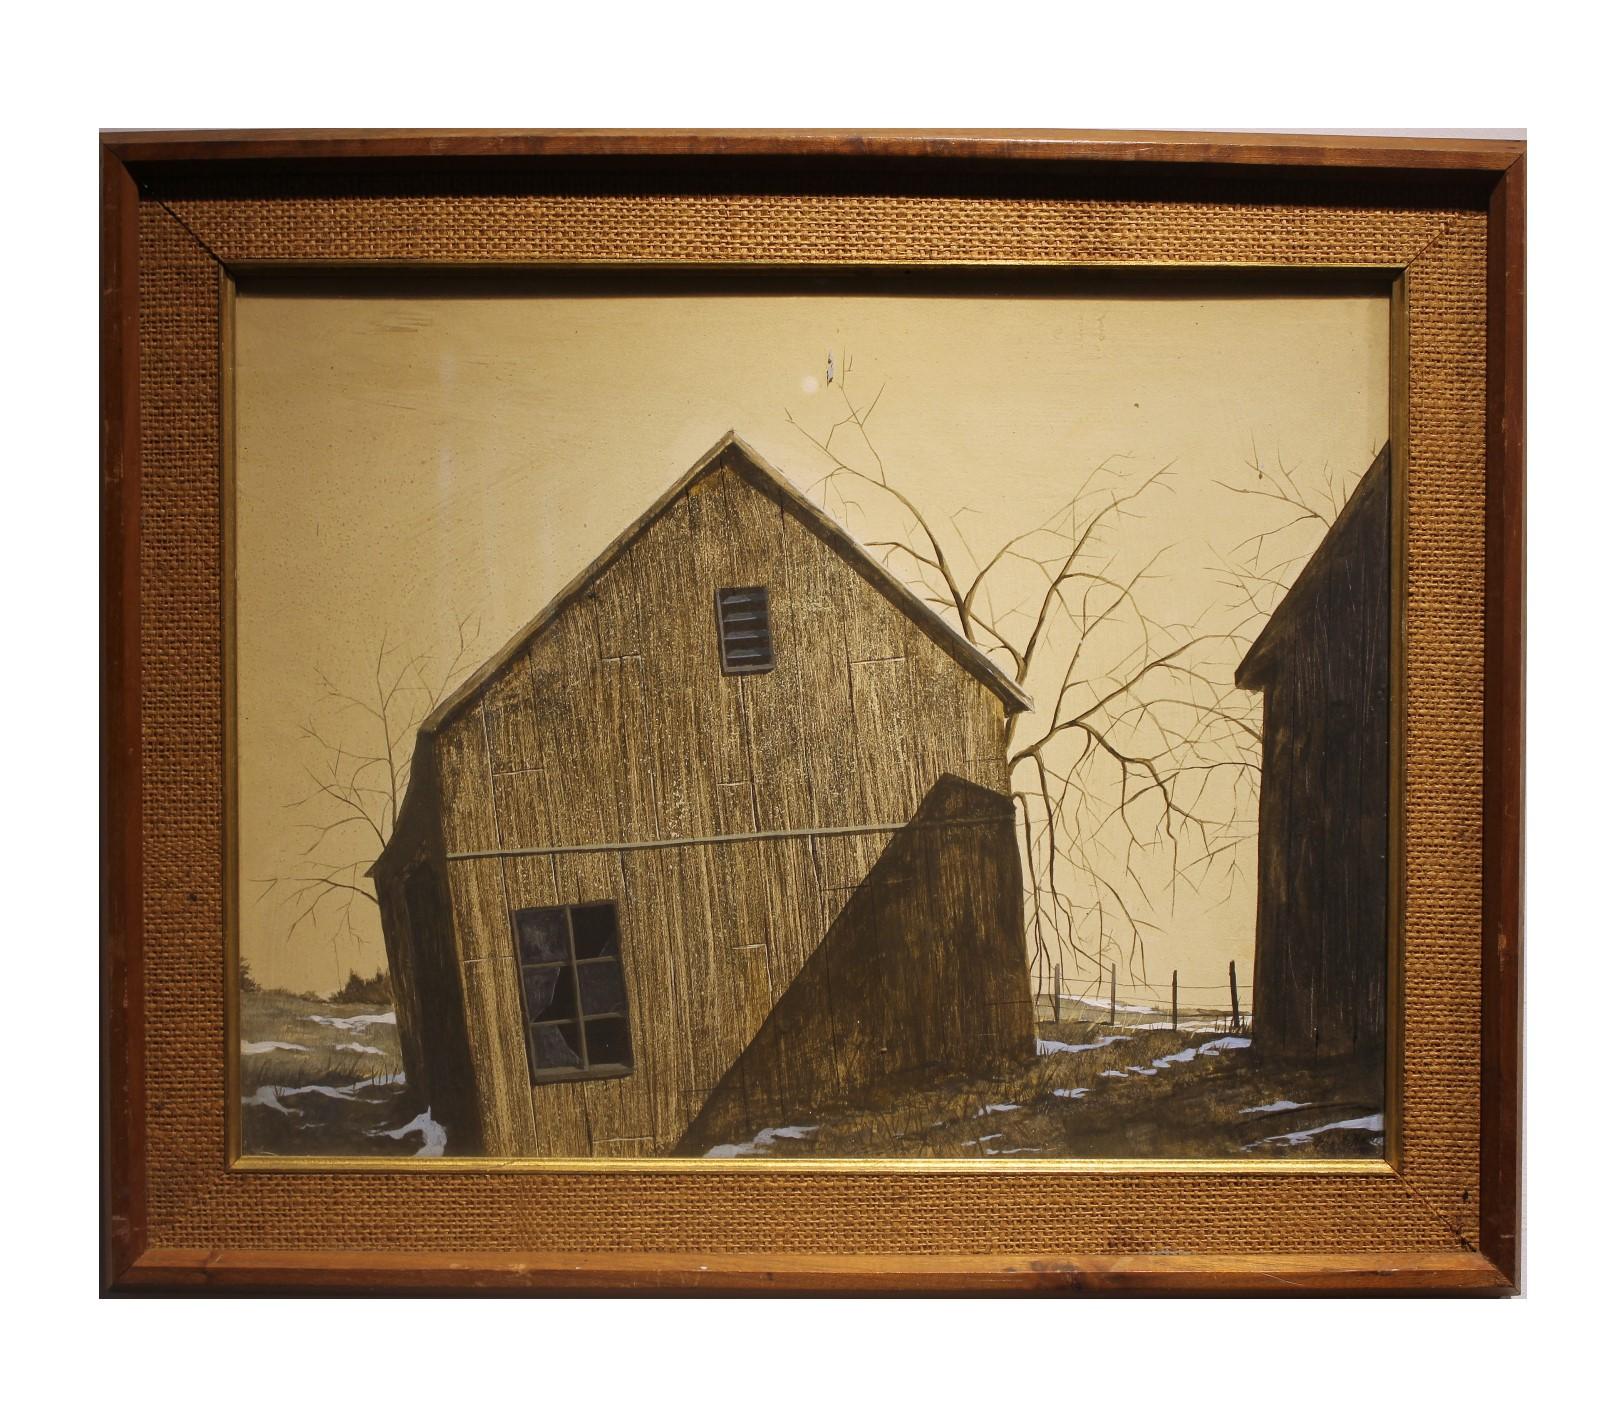 John W. Wade Landscape Art - Winter Farm Landscape with a Barn